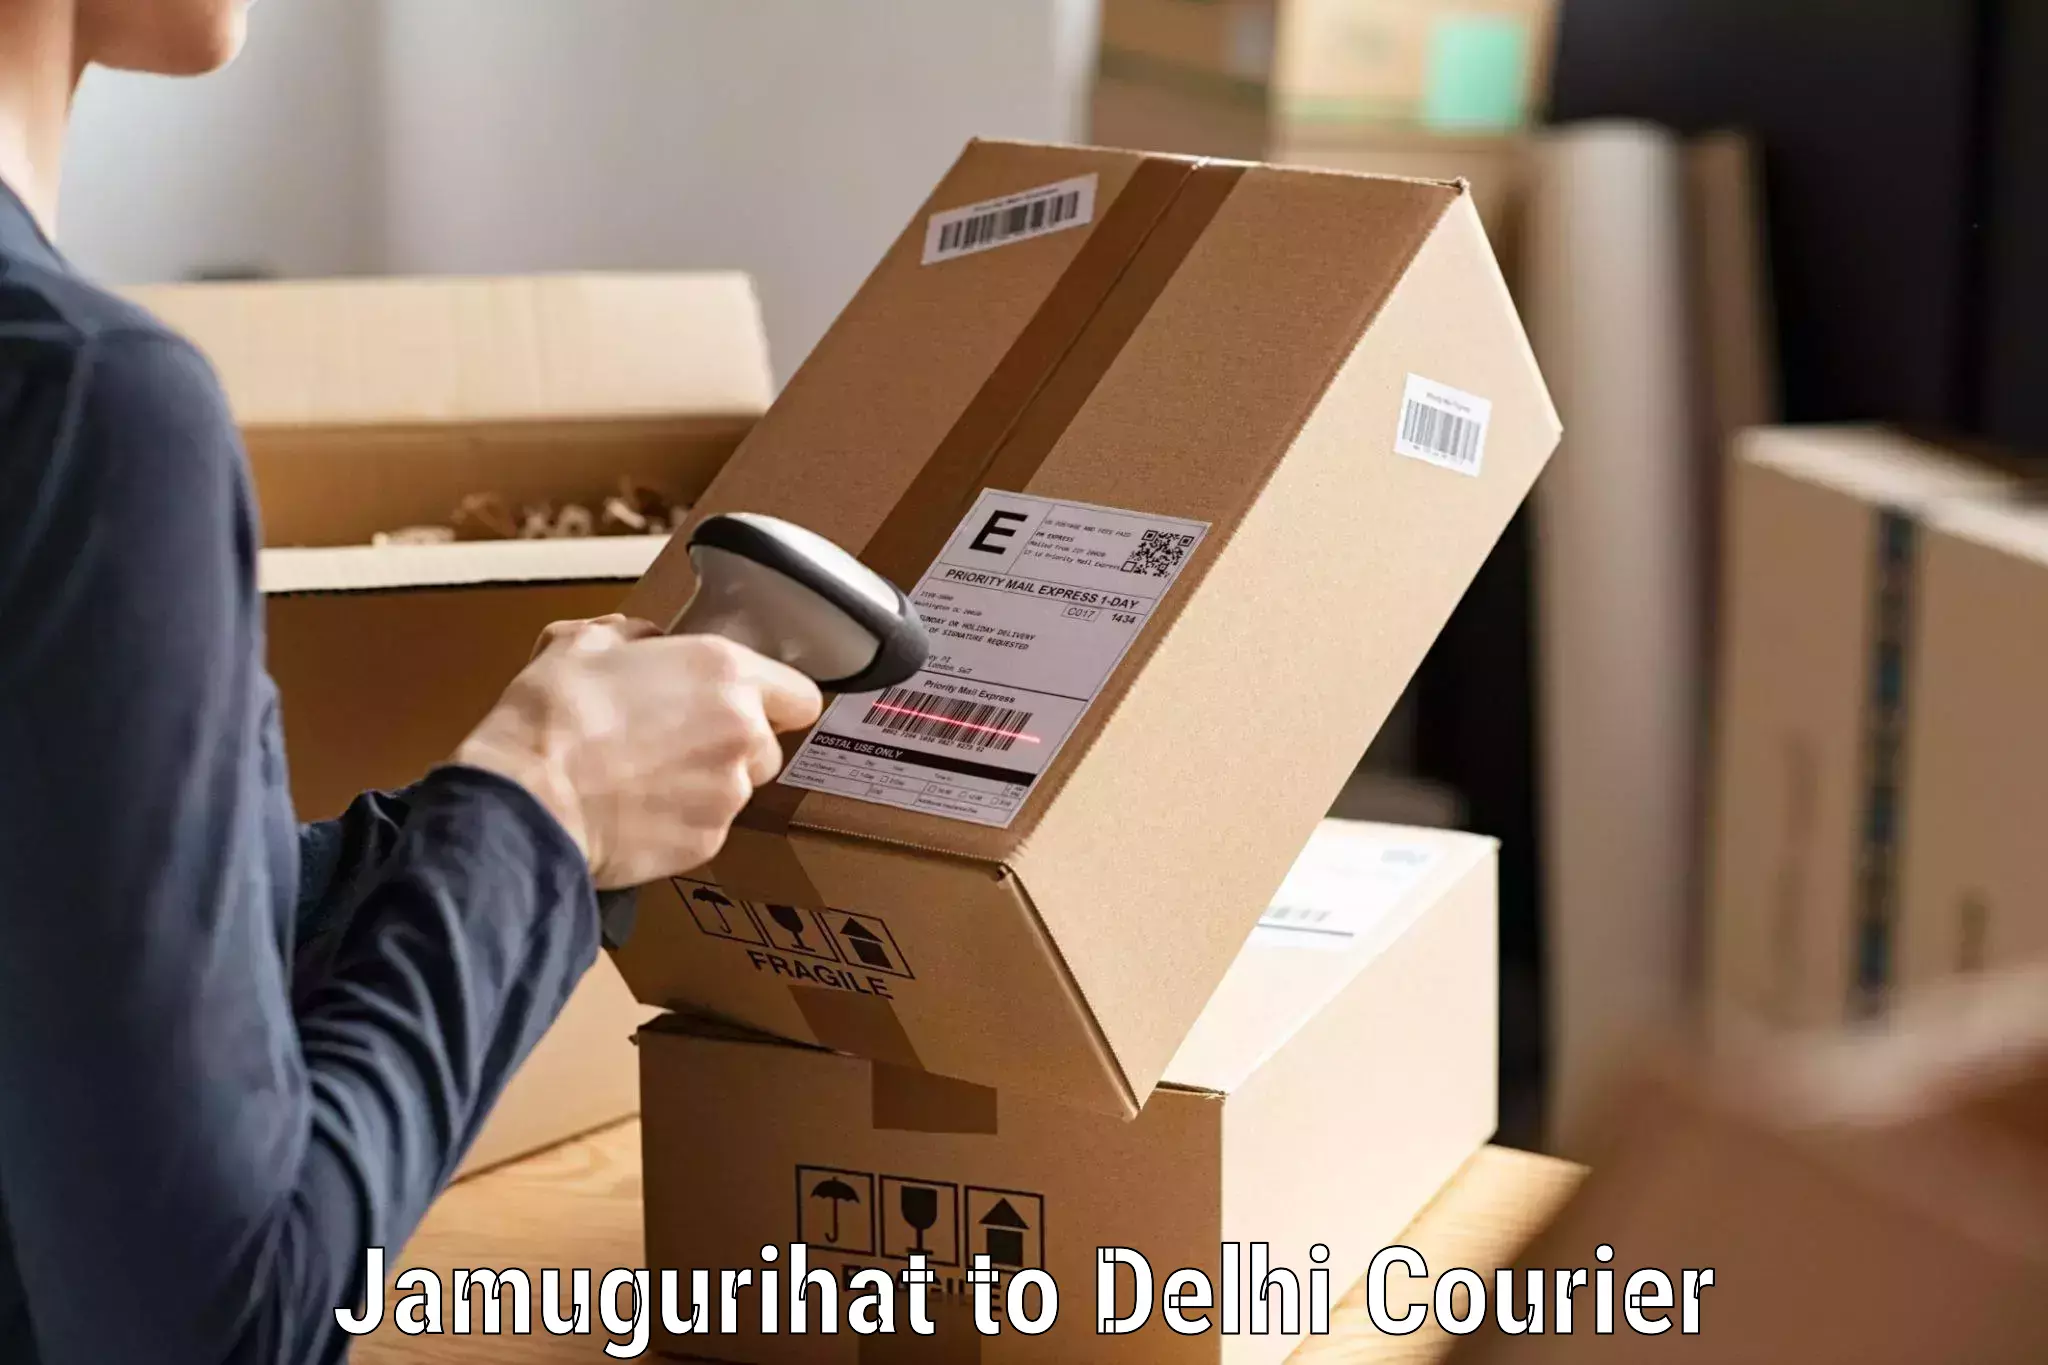 Global delivery options Jamugurihat to NIT Delhi